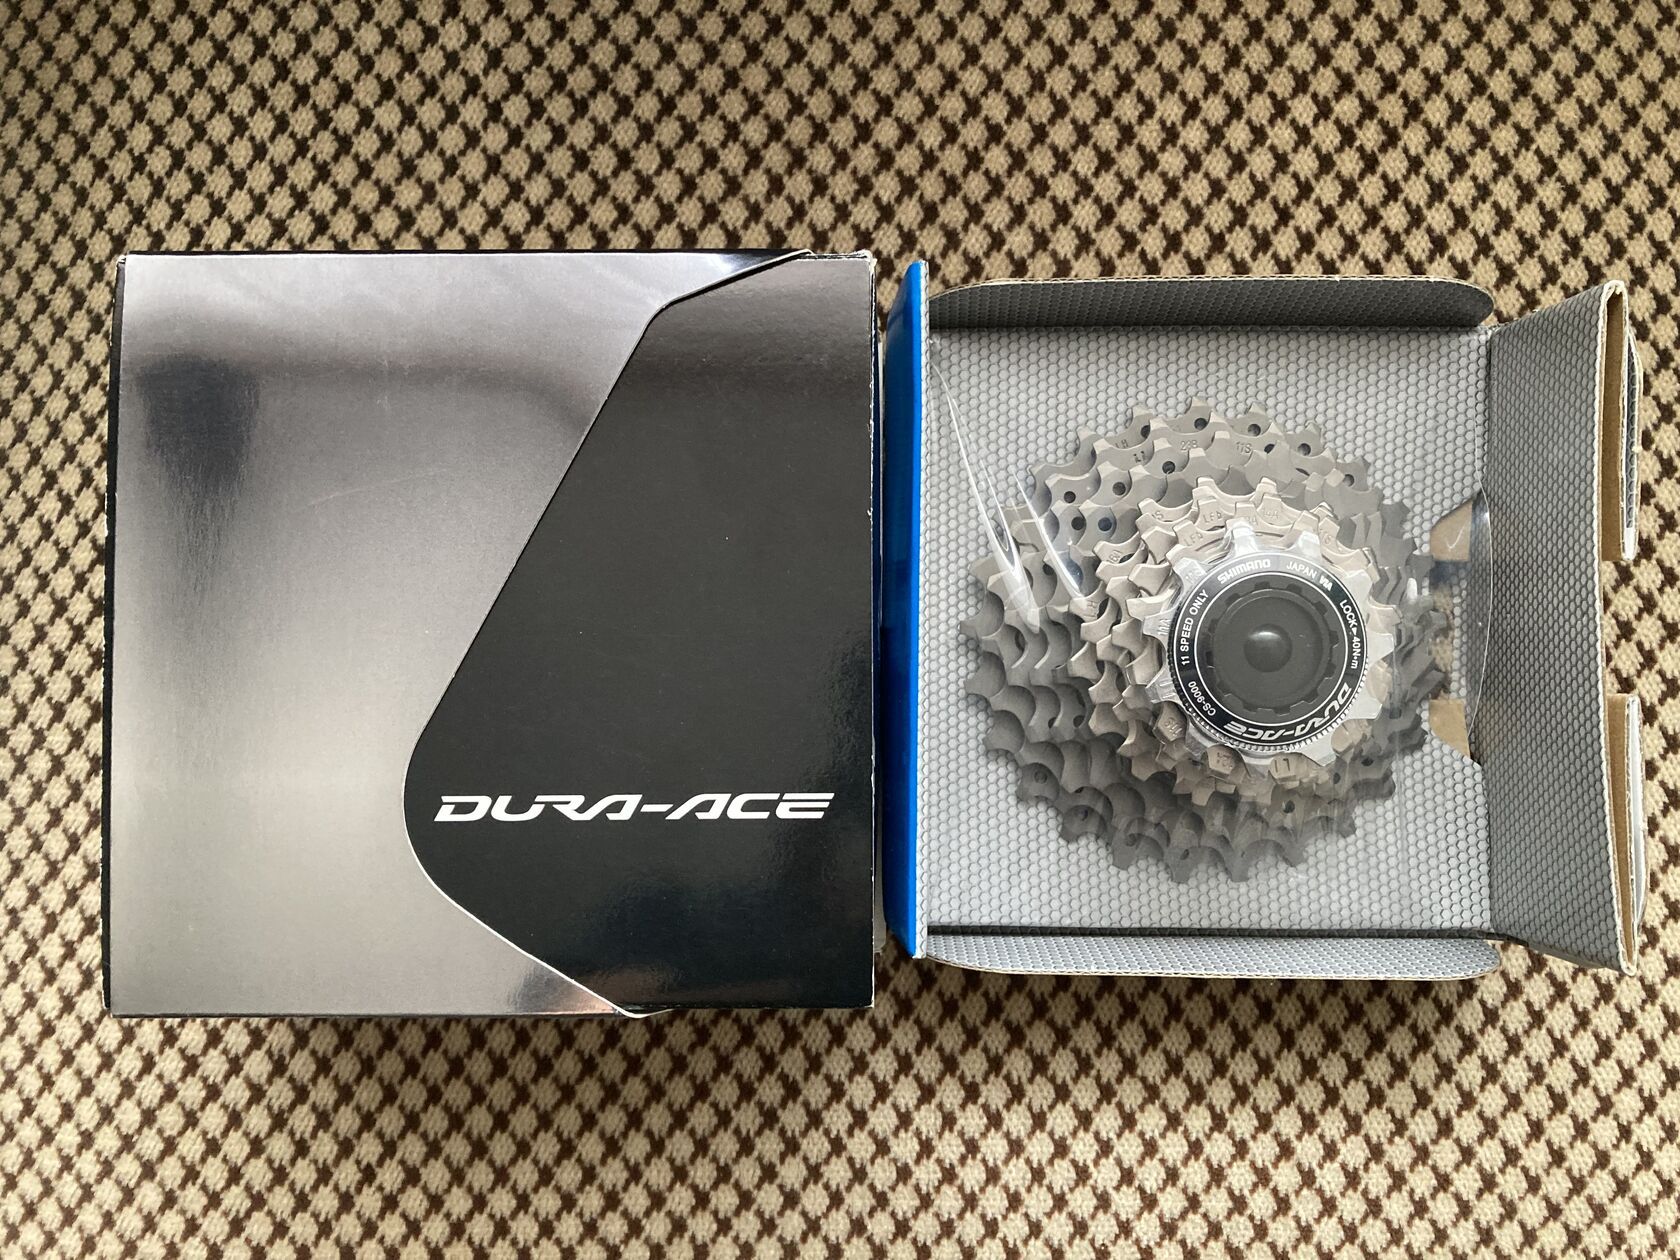 Kazeta Shimano Dura-Ace CS-9000 11sp. 11-25T za 2 990 Kč